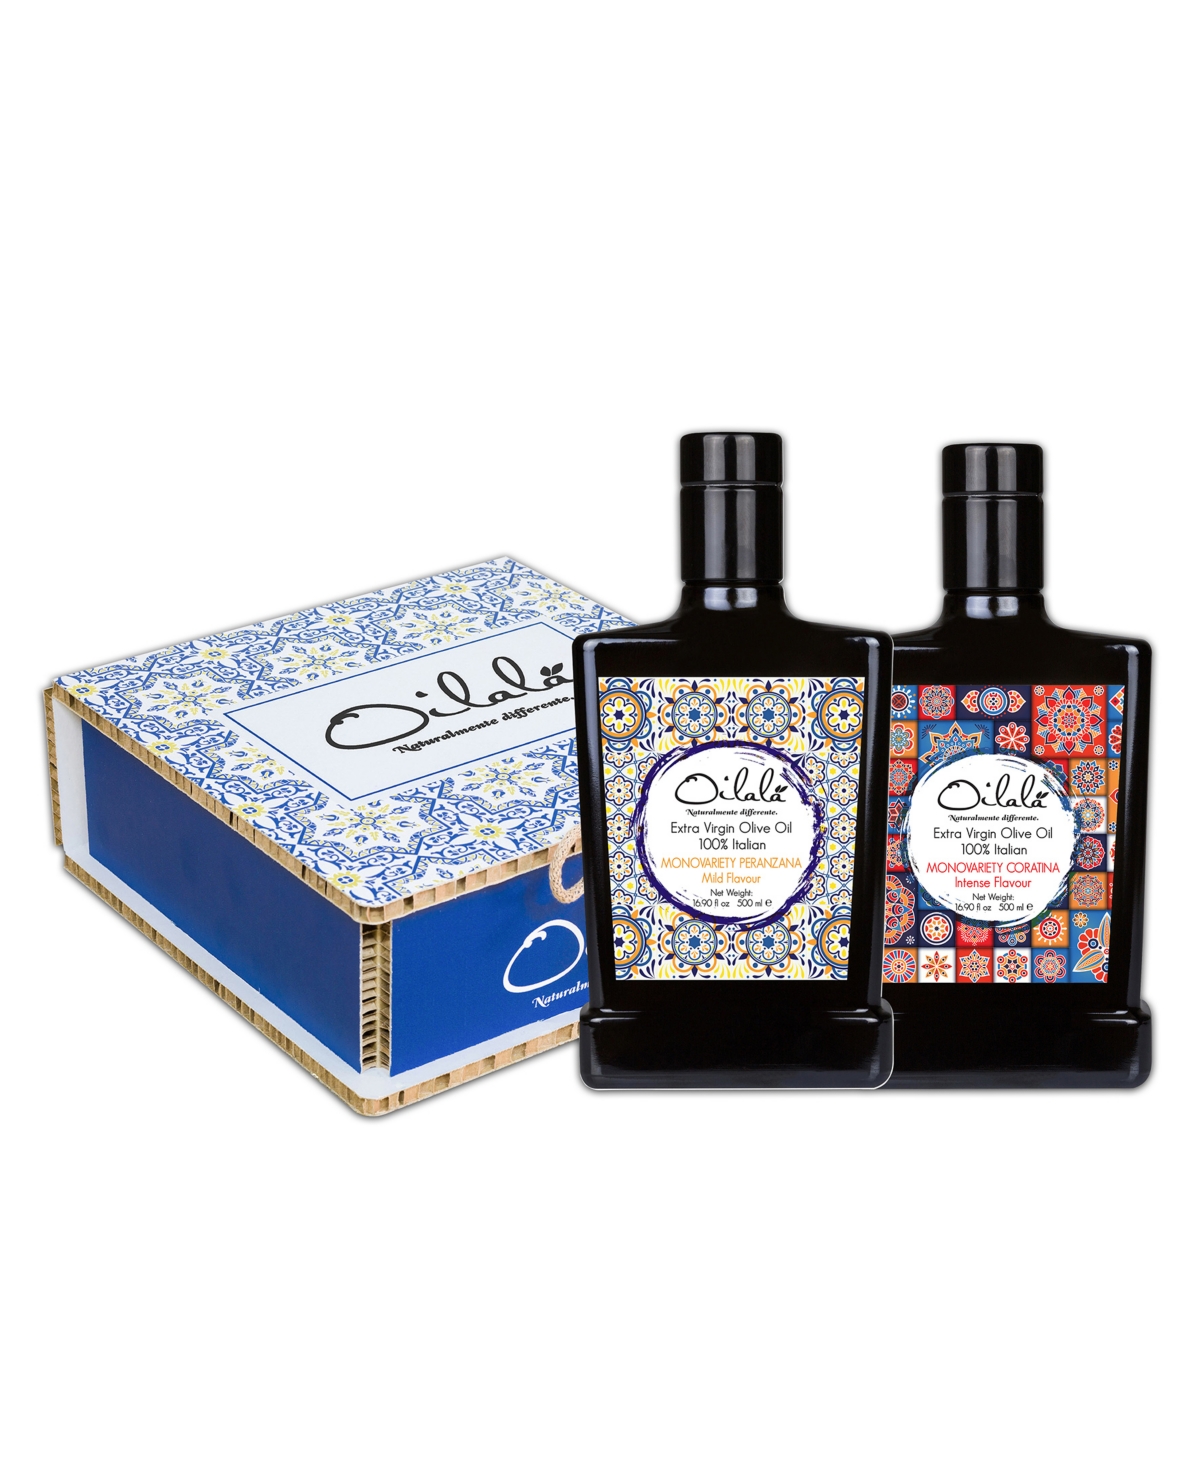 Oilala Extra Virgin Olive Oil Gift Box, Set Of 2, 500ml Each In Burgundy